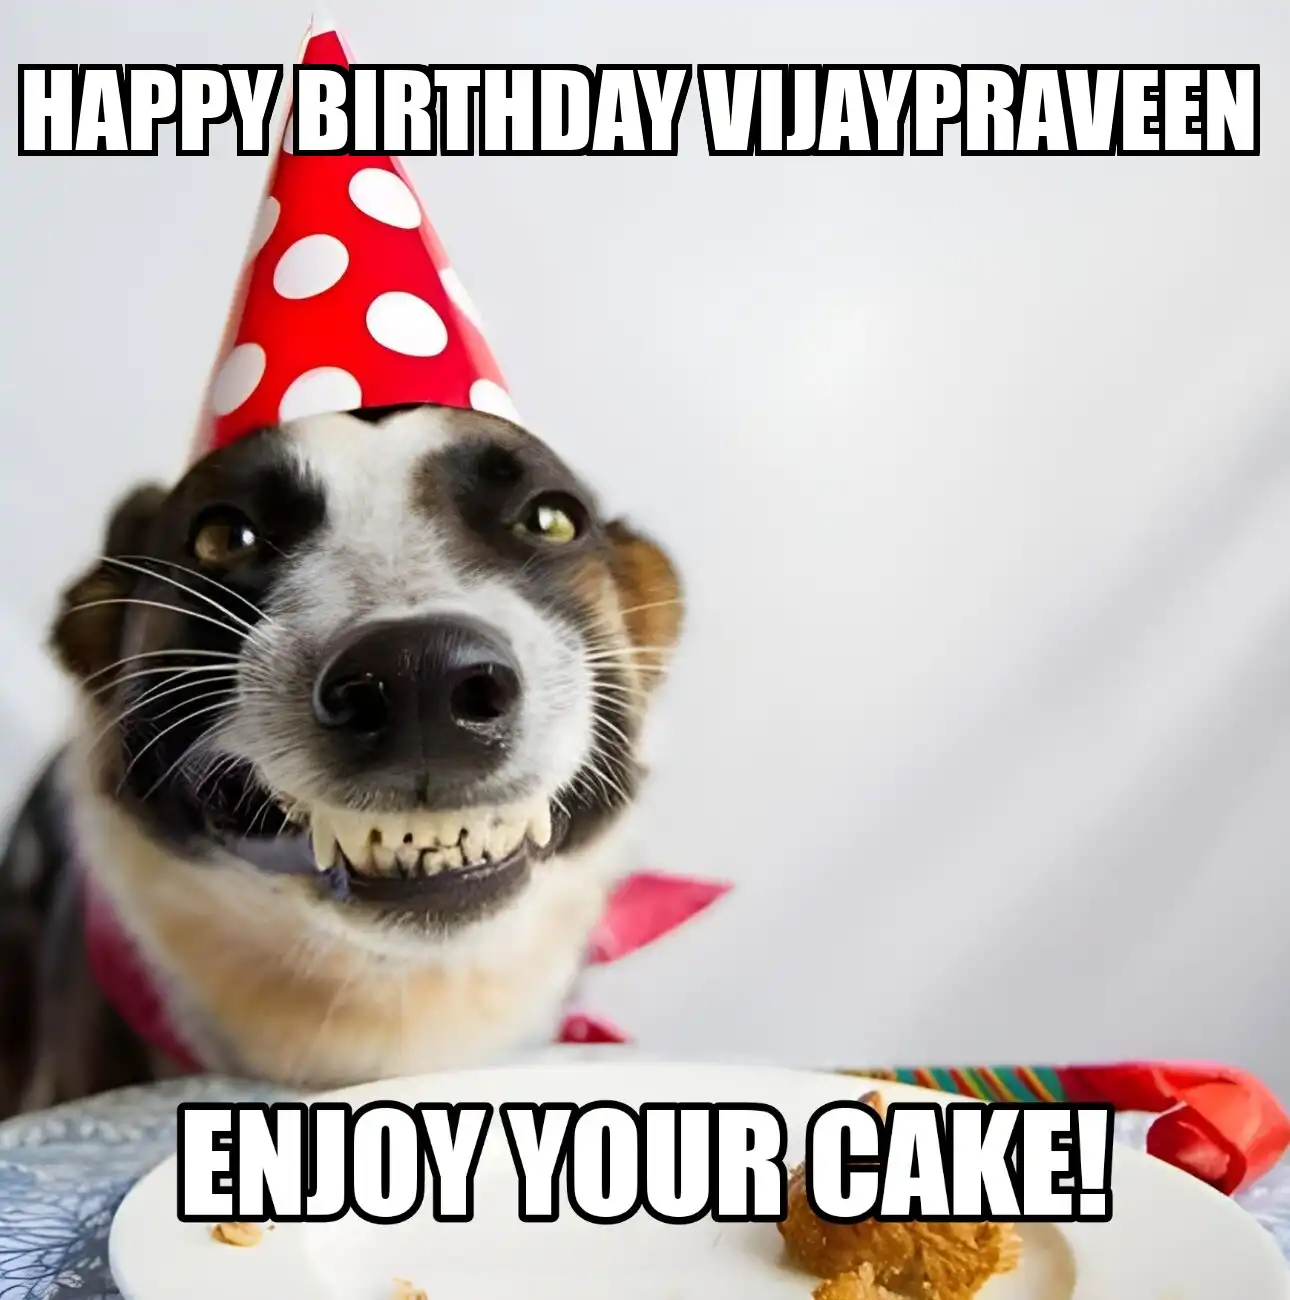 Happy Birthday Vijaypraveen Enjoy Your Cake Dog Meme